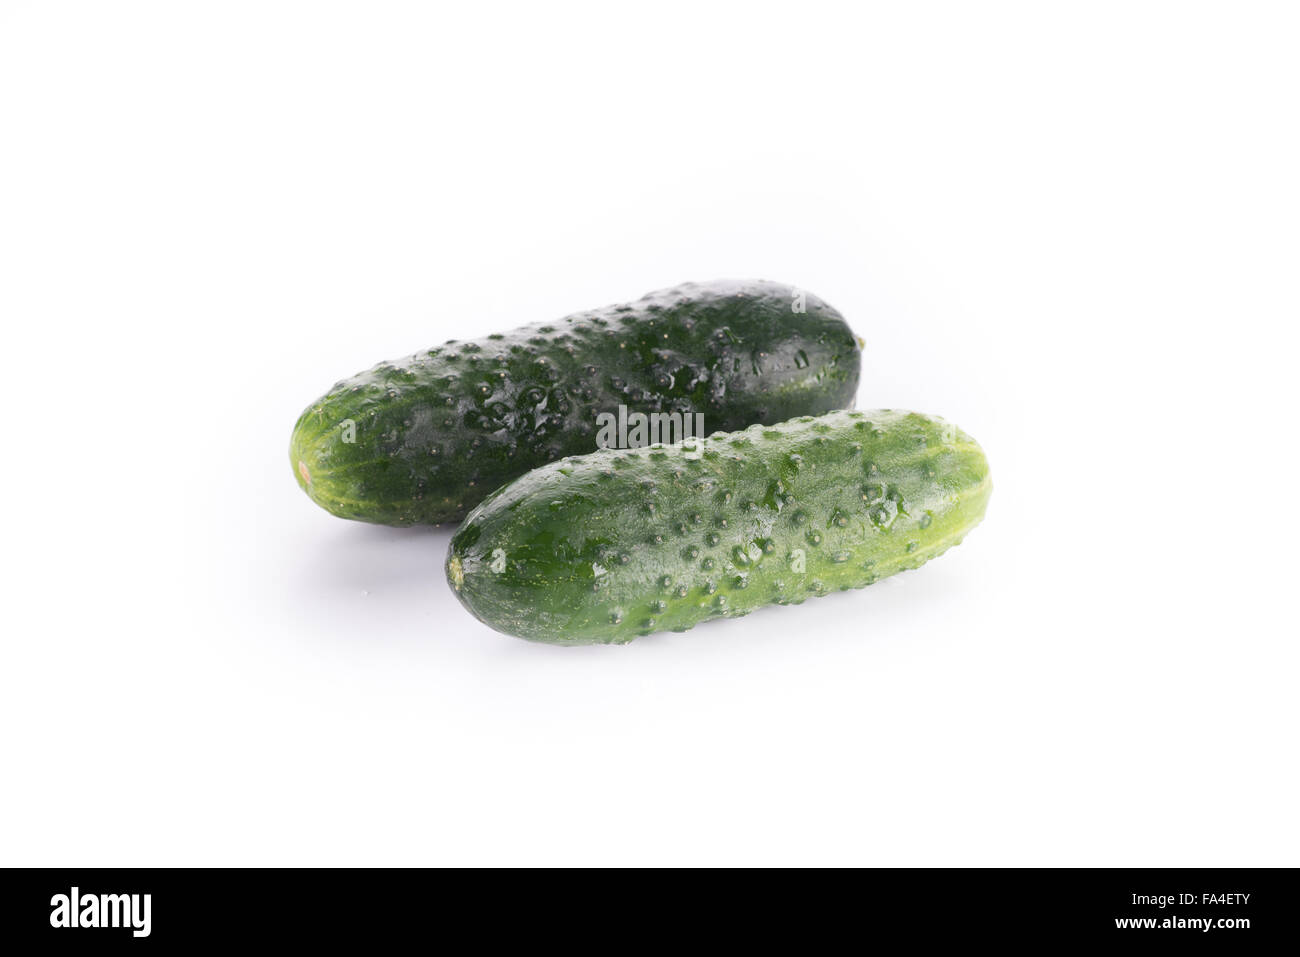 Cucumber isolated on white background Stock Photo